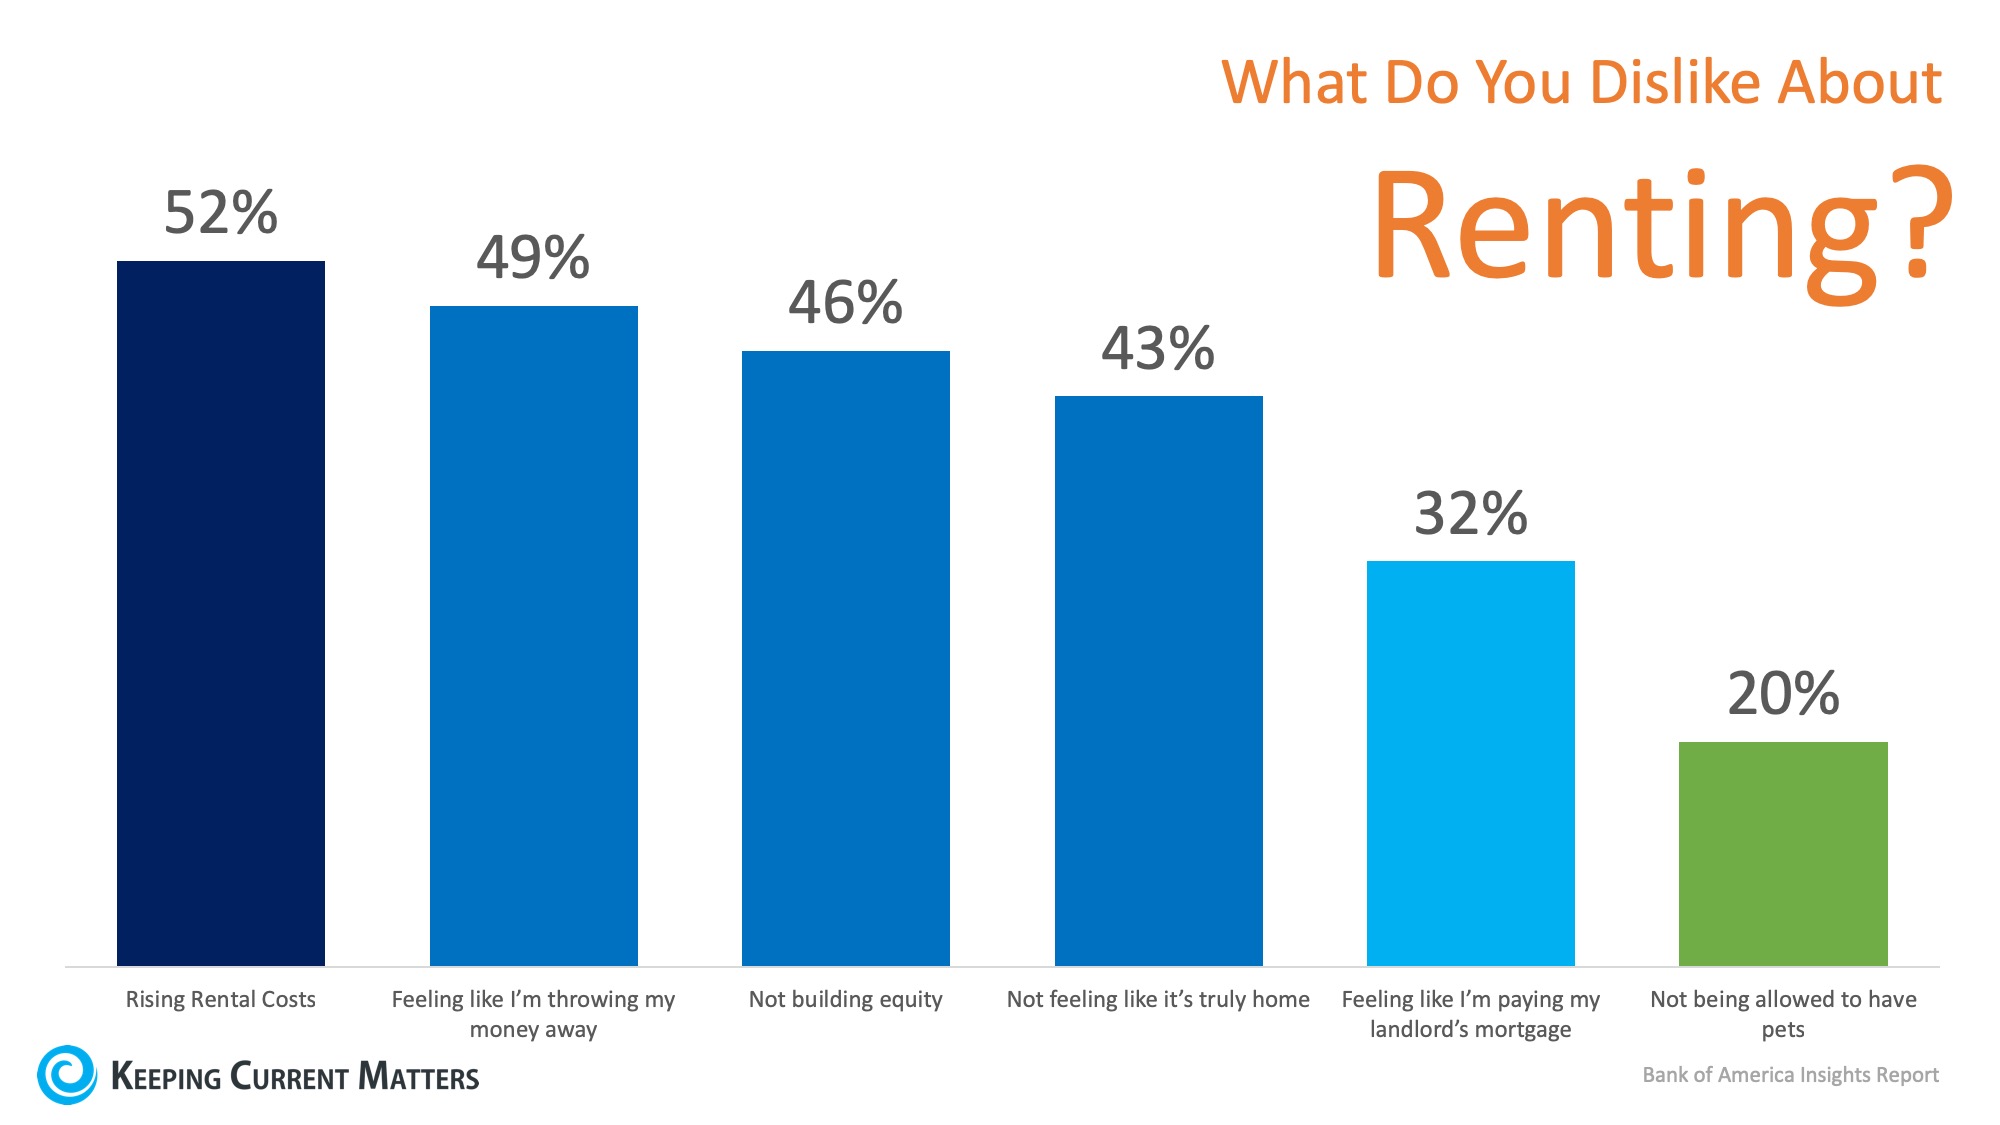 Why Do You Dislike Renting?